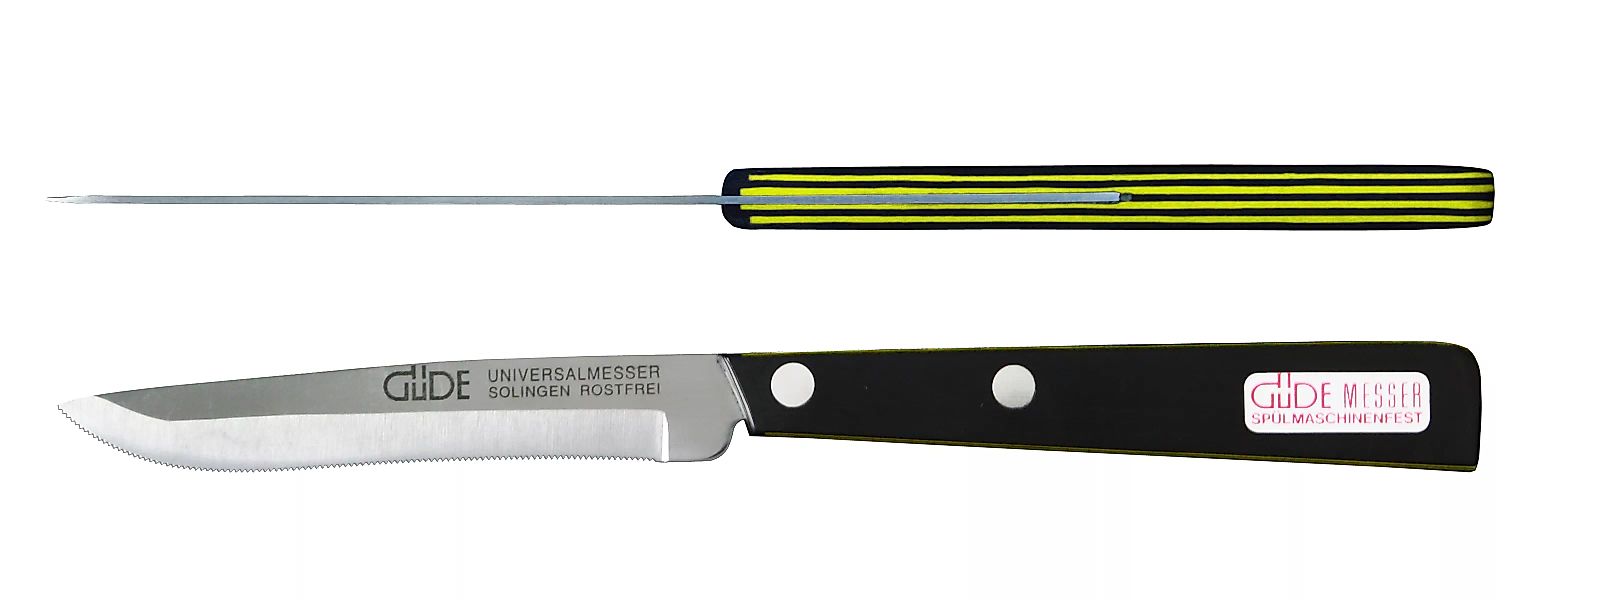 Güde Universalmesser 10 cm - Edelstahl - schwarz-gelbem Griff günstig online kaufen